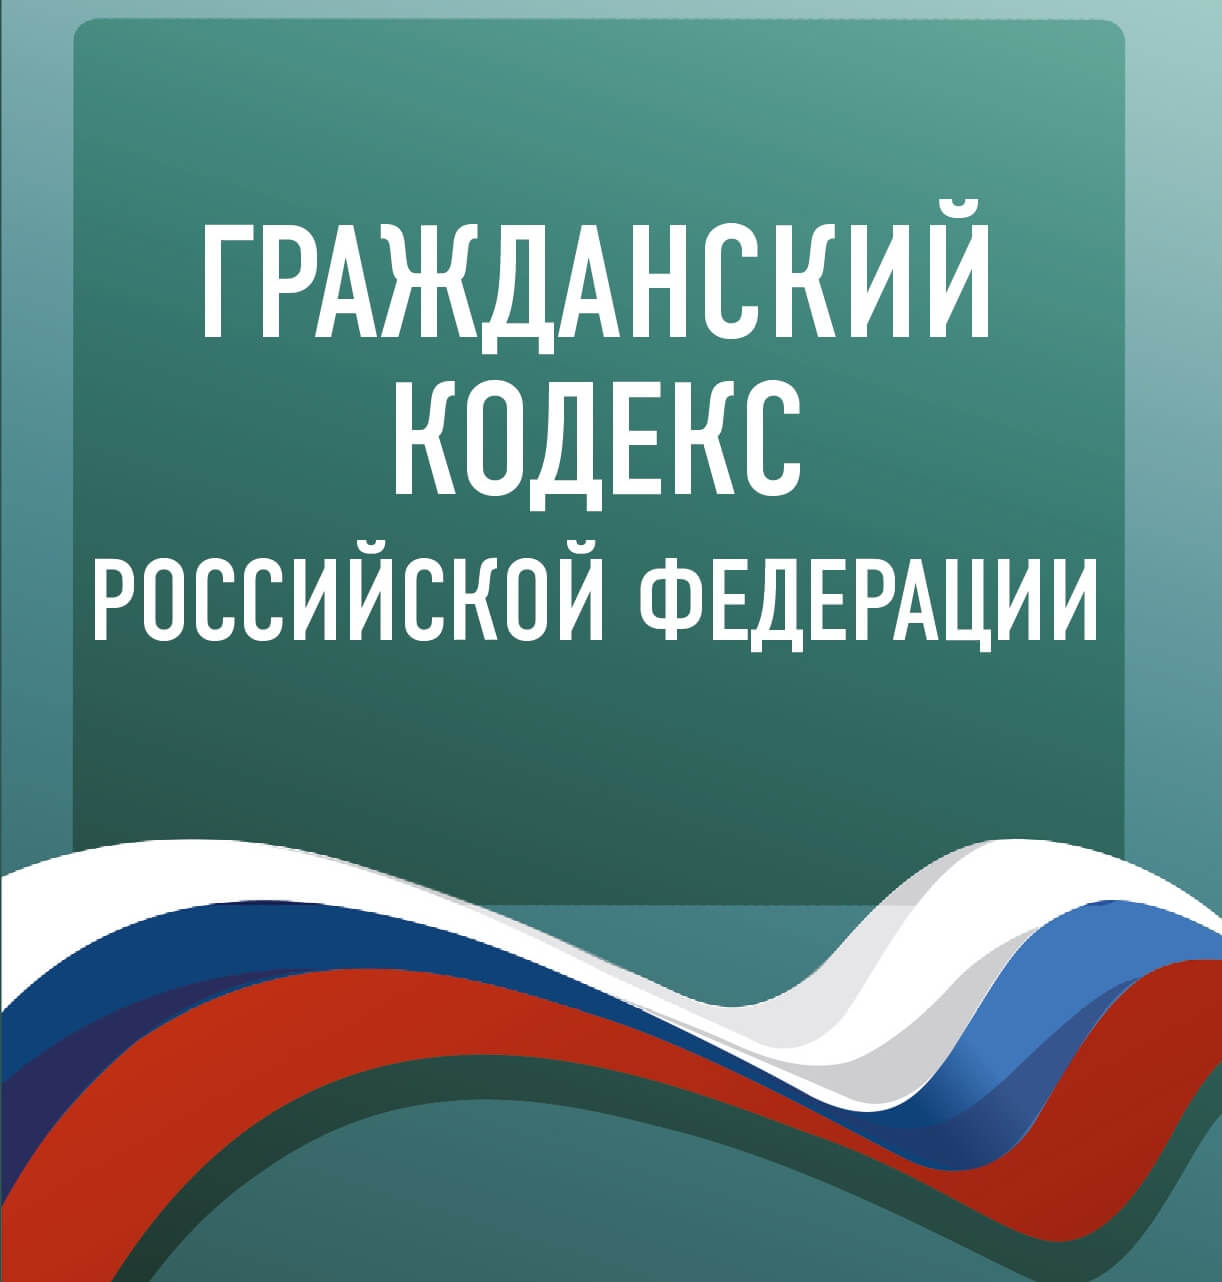 Гражданский кодекс Российской Федерации (последняя редакция, 2018 год)